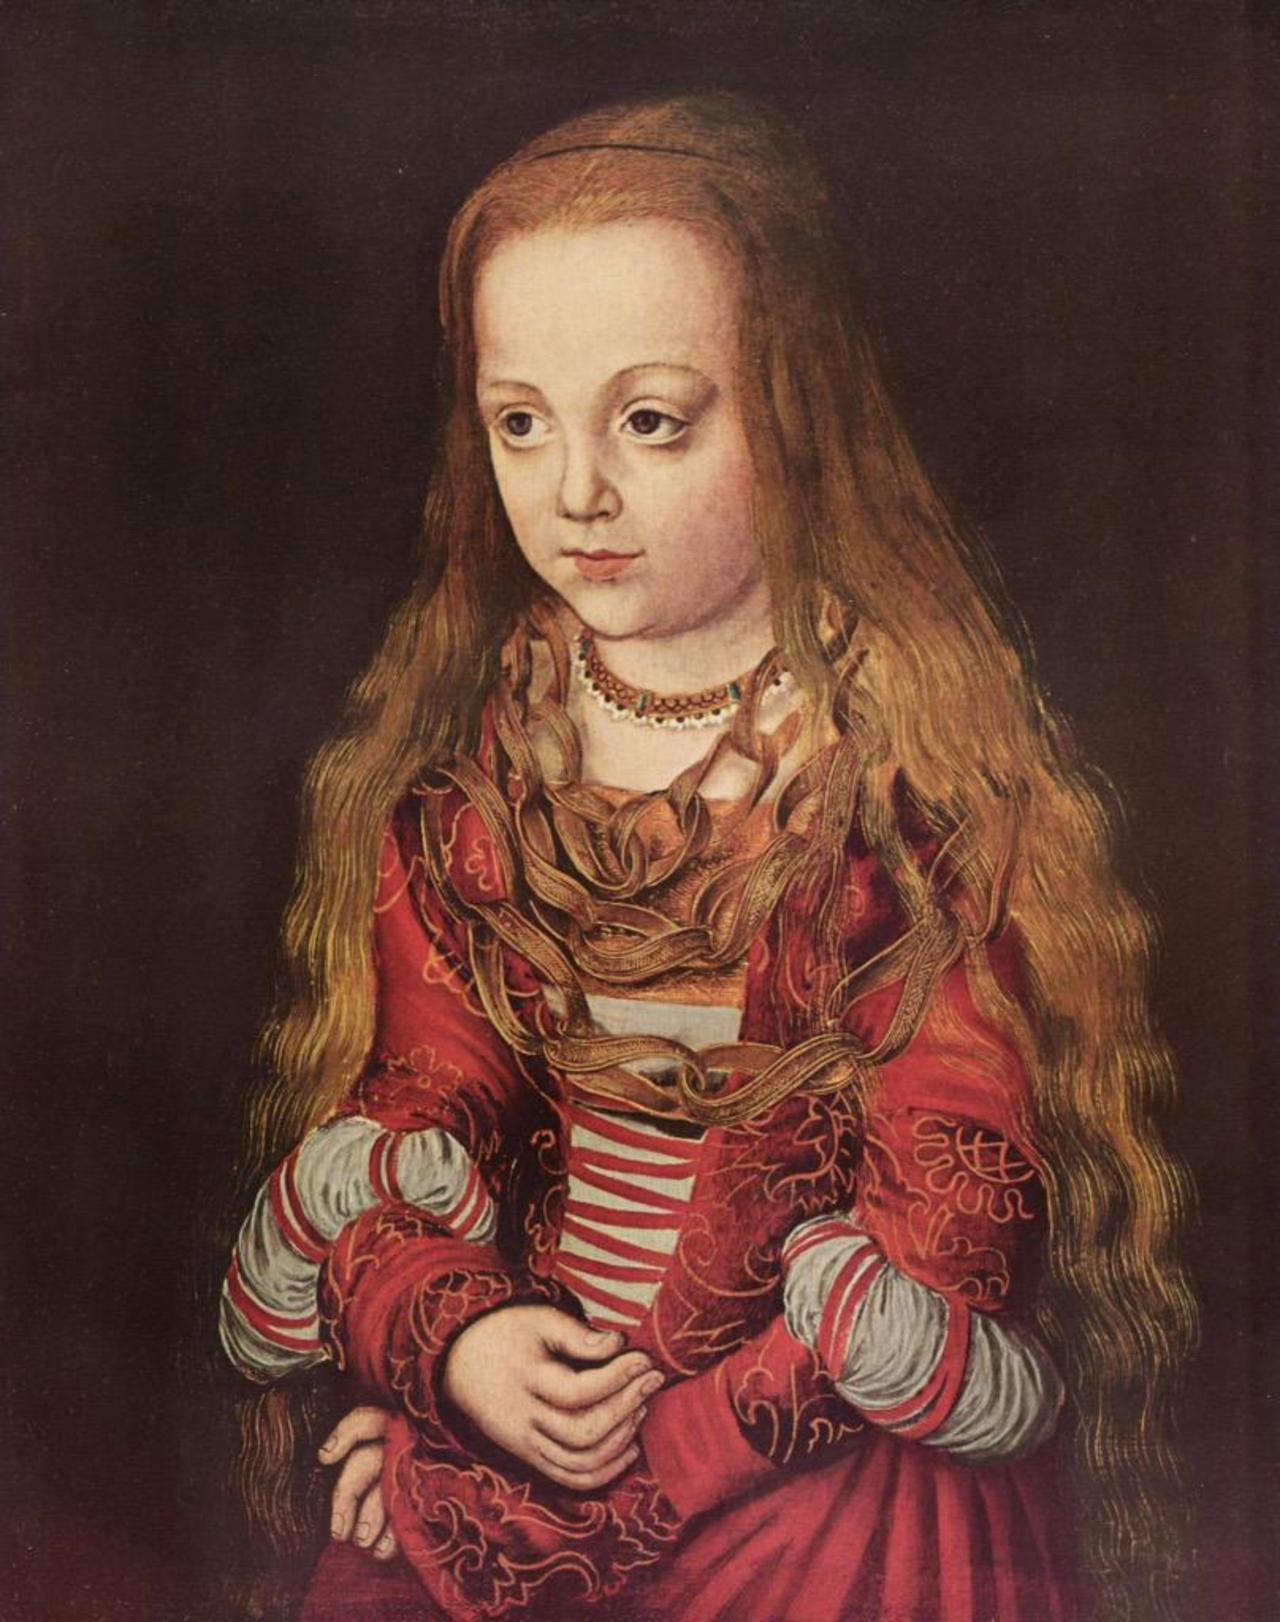 “@geminicat7: 'Portrait of a Saxon Princess'
Lucas Cranach the Elder, 1517 #art http://t.co/eT5Xo3QzFF”